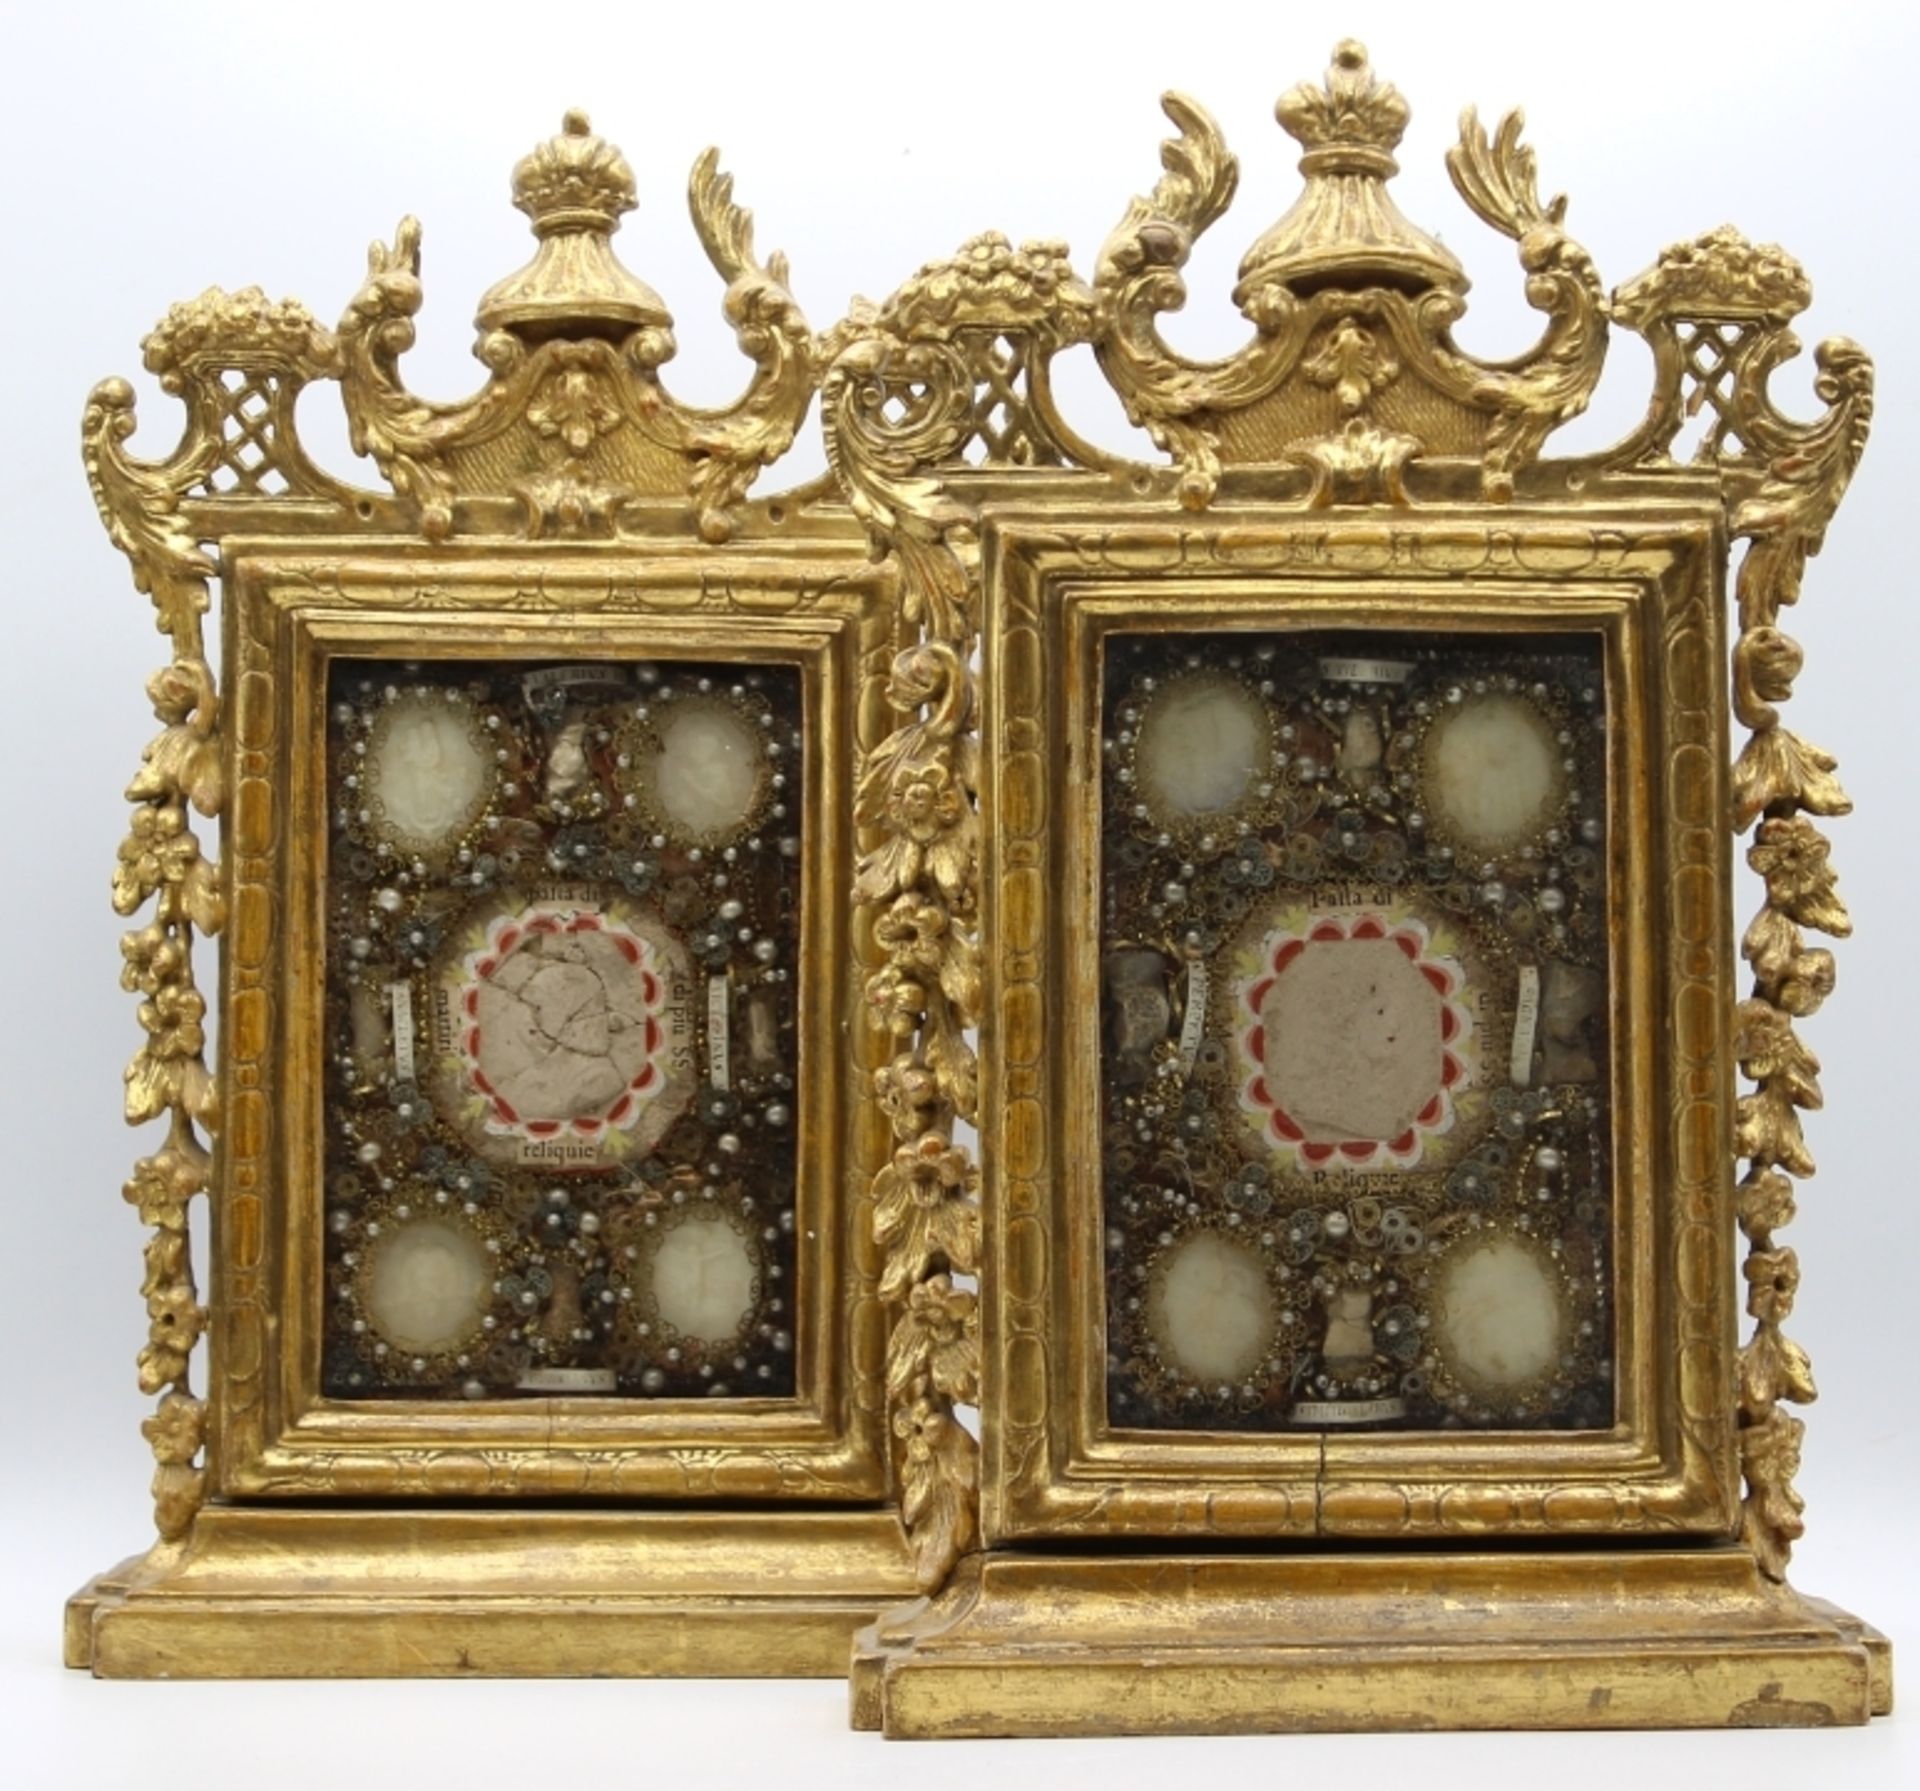 Paar Reliquienständer - 19. Jahrhundert Holz geschnitzt, gefasst und vergoldet, verziert mit